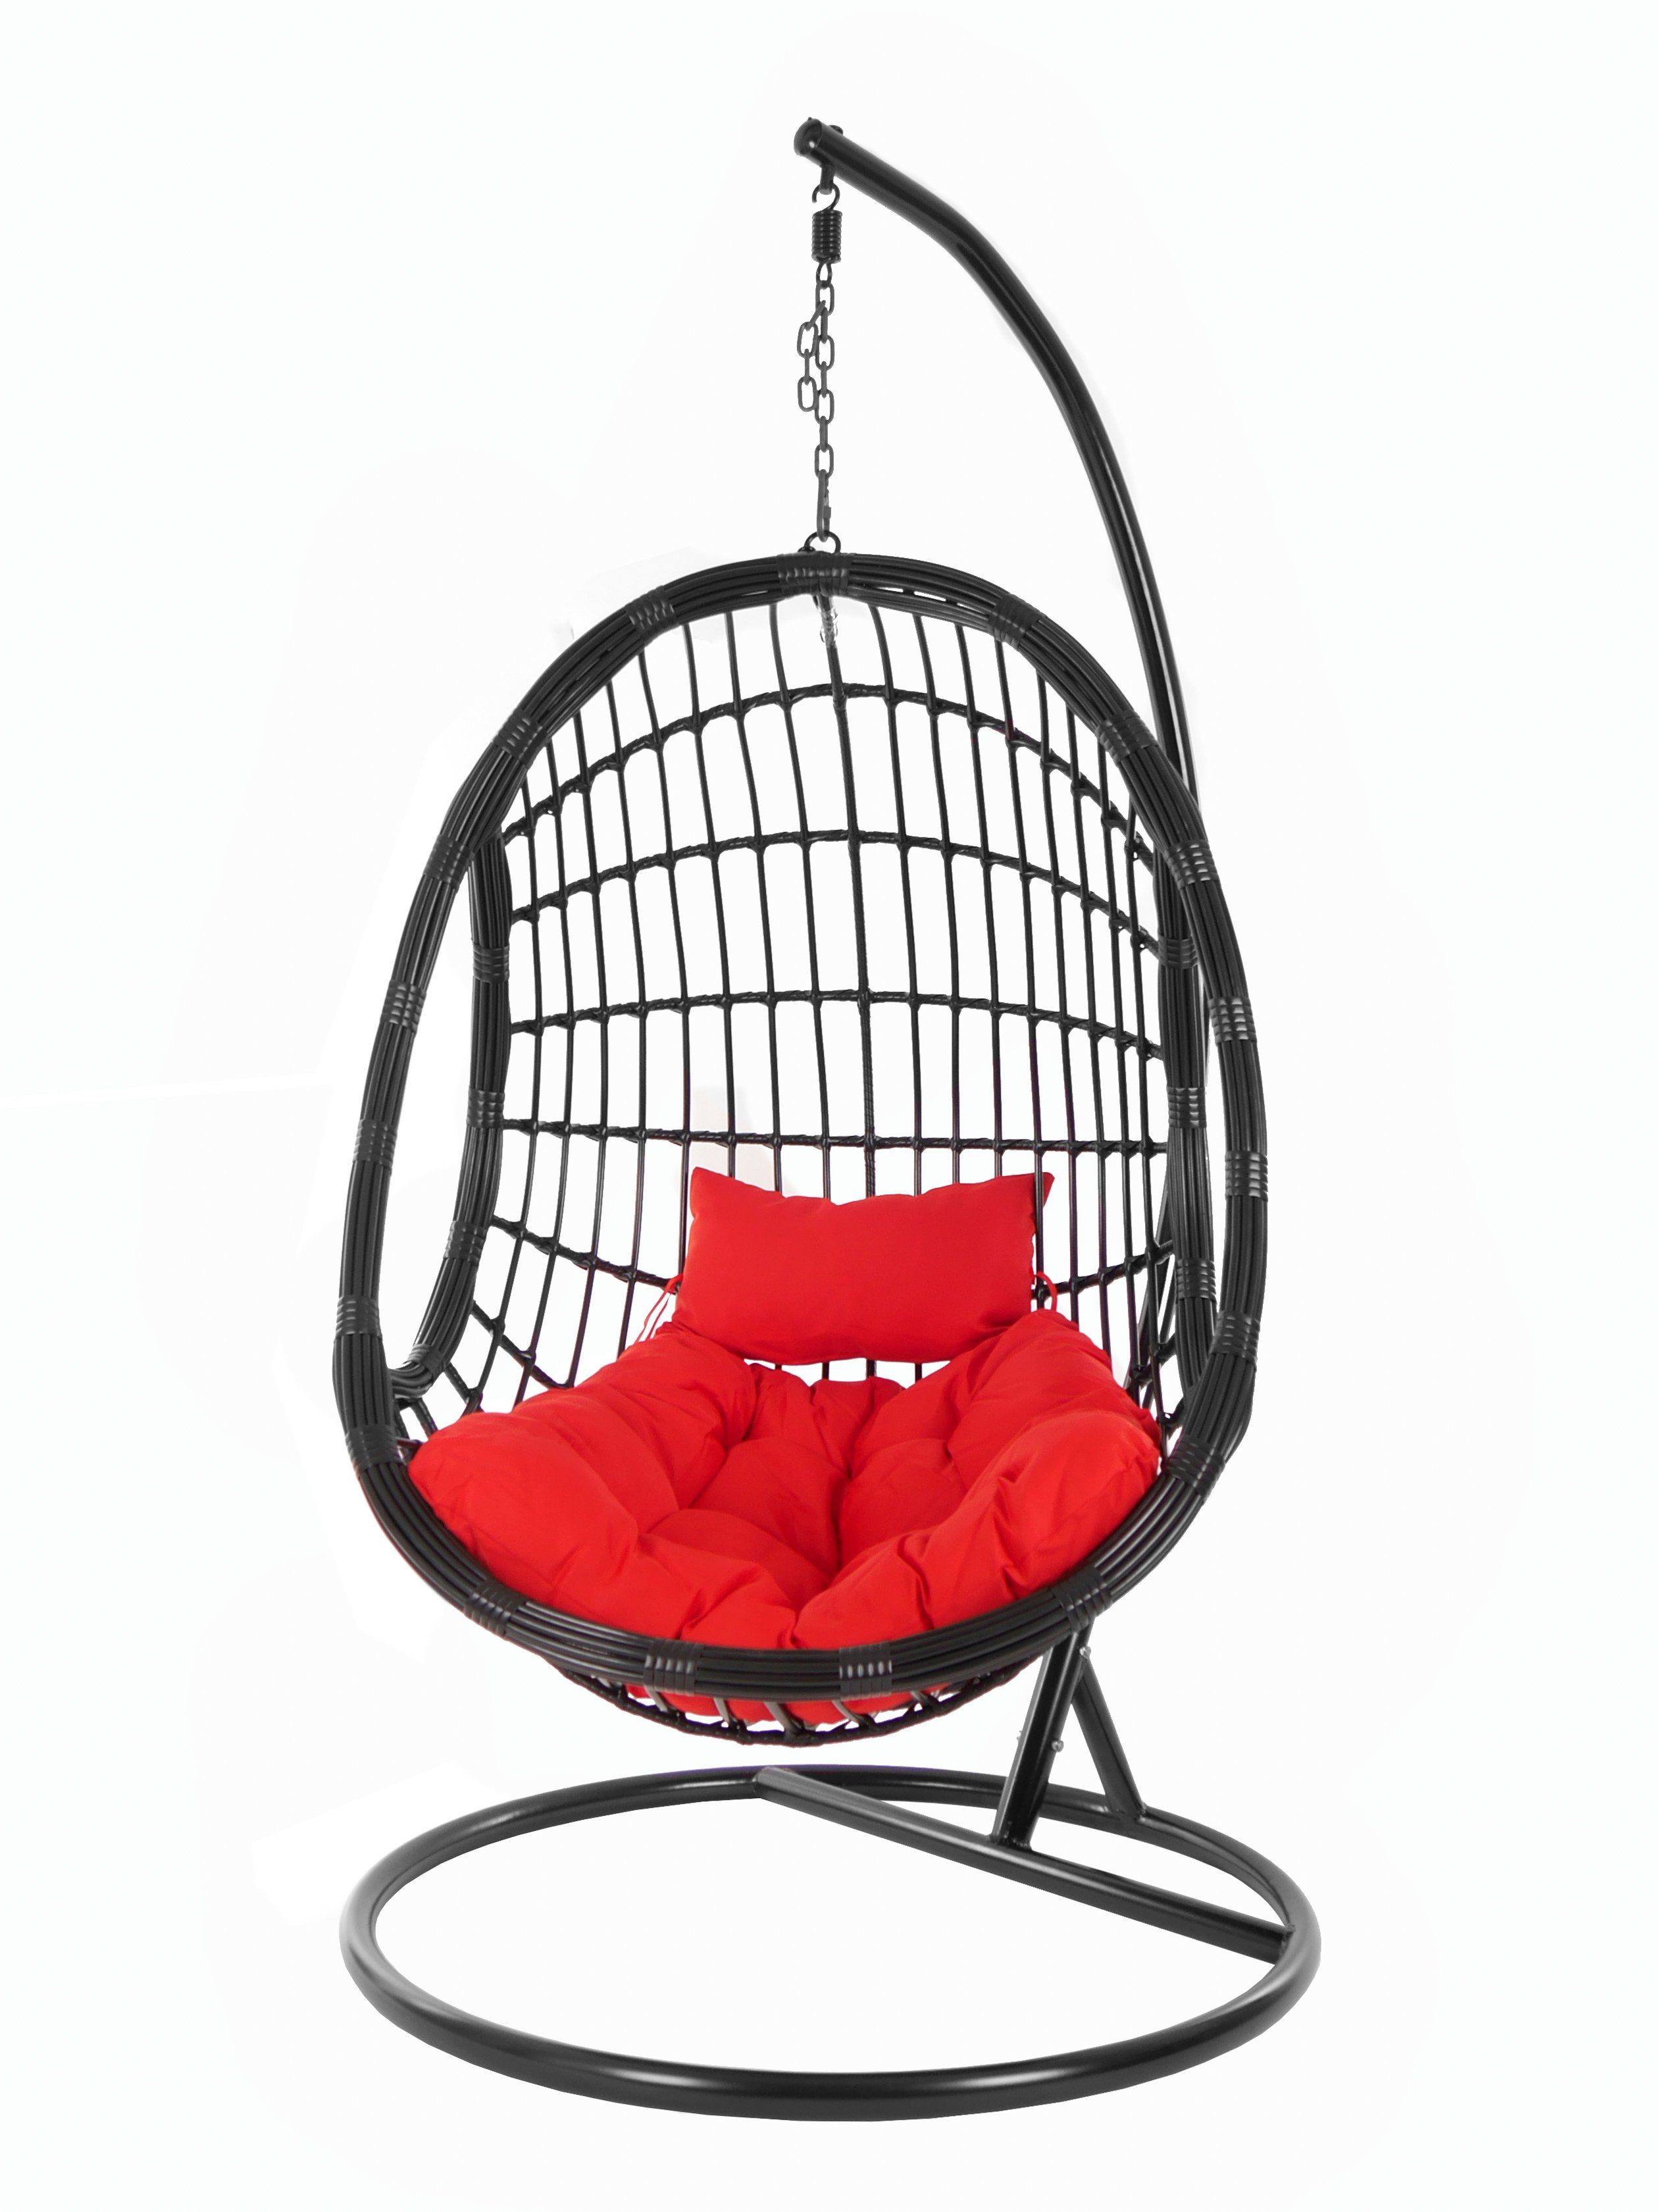 KIDEO Hängesessel Gestell edles scarlet) Swing rot Hängesessel PALMANOVA (3050 Schwebesessel, und mit Kissen, Loungemöbel, Chair, black, schwarz, Design